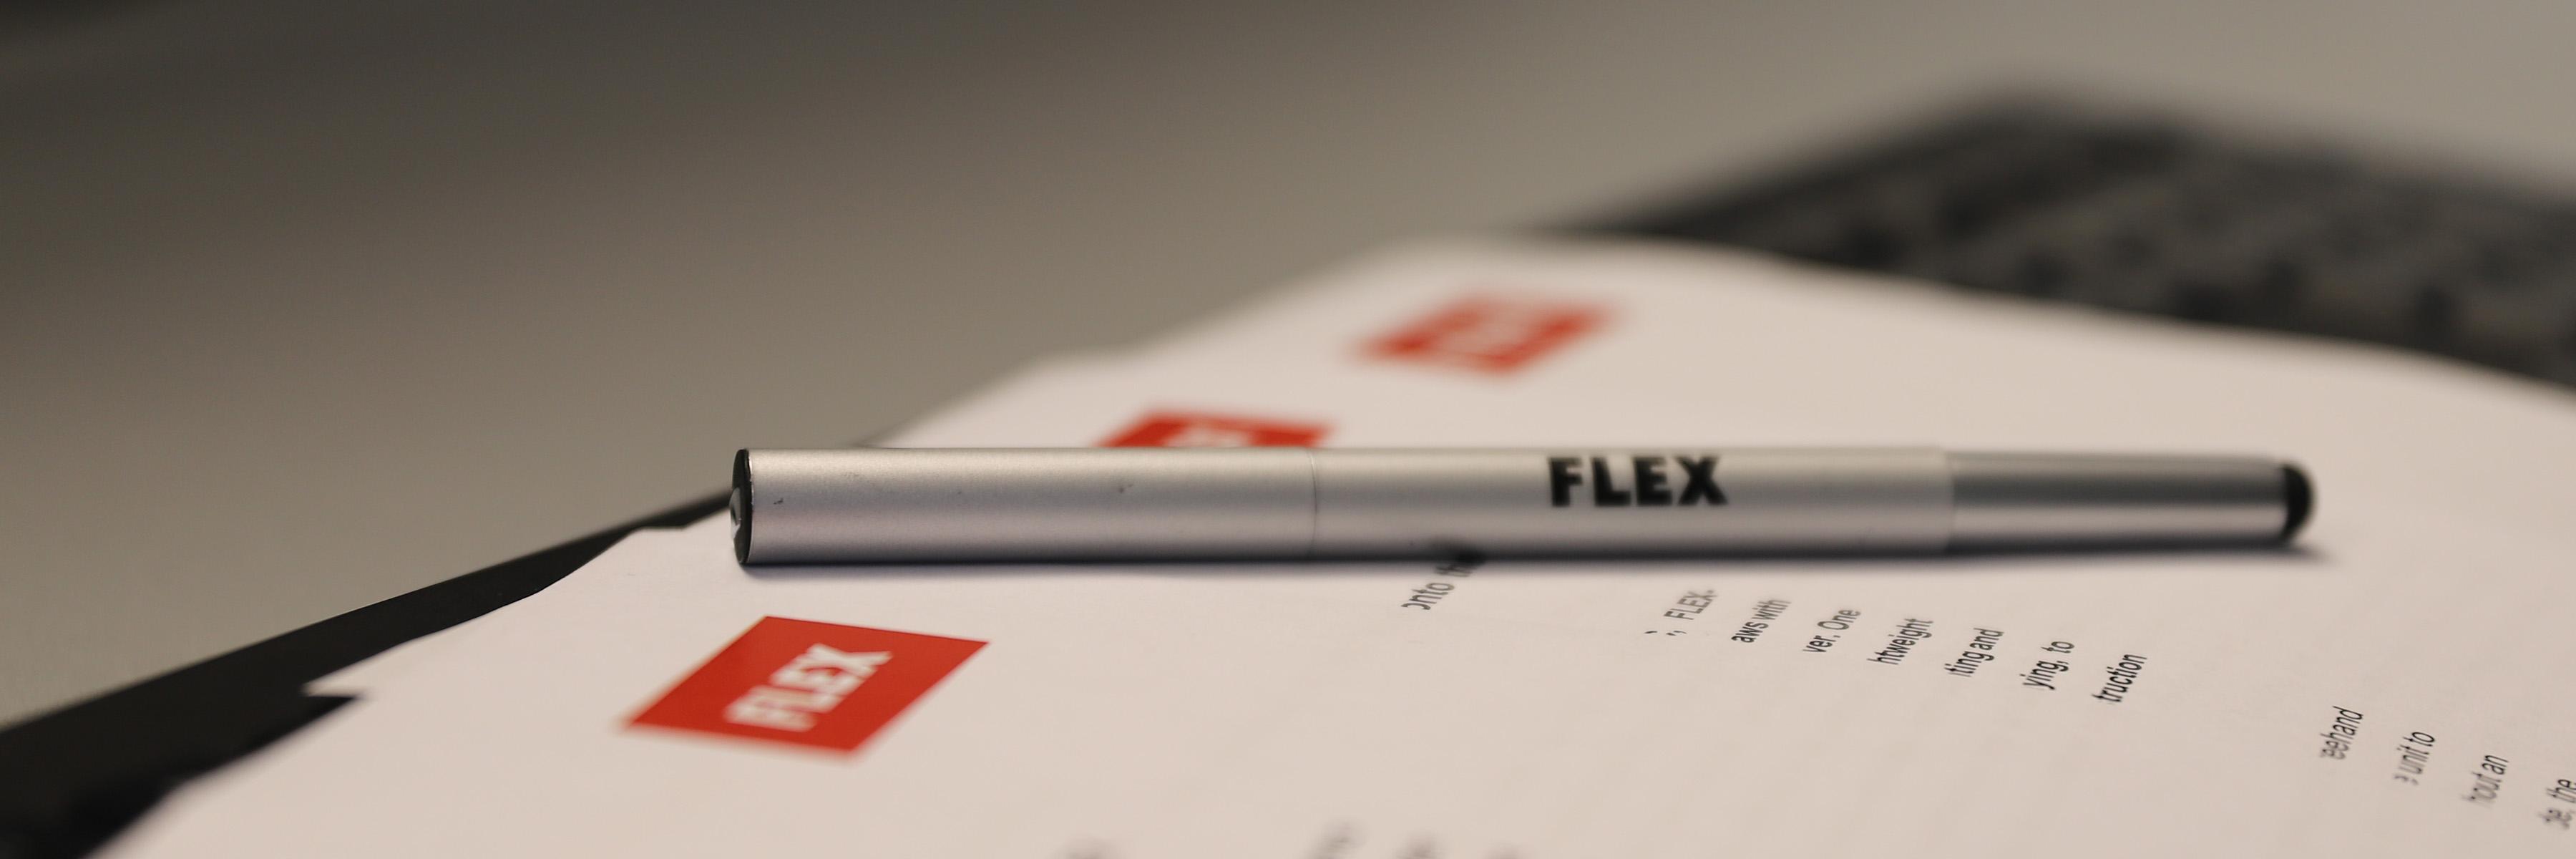 Obrázek v záhlaví Tisková stránka FLEX Power Tools